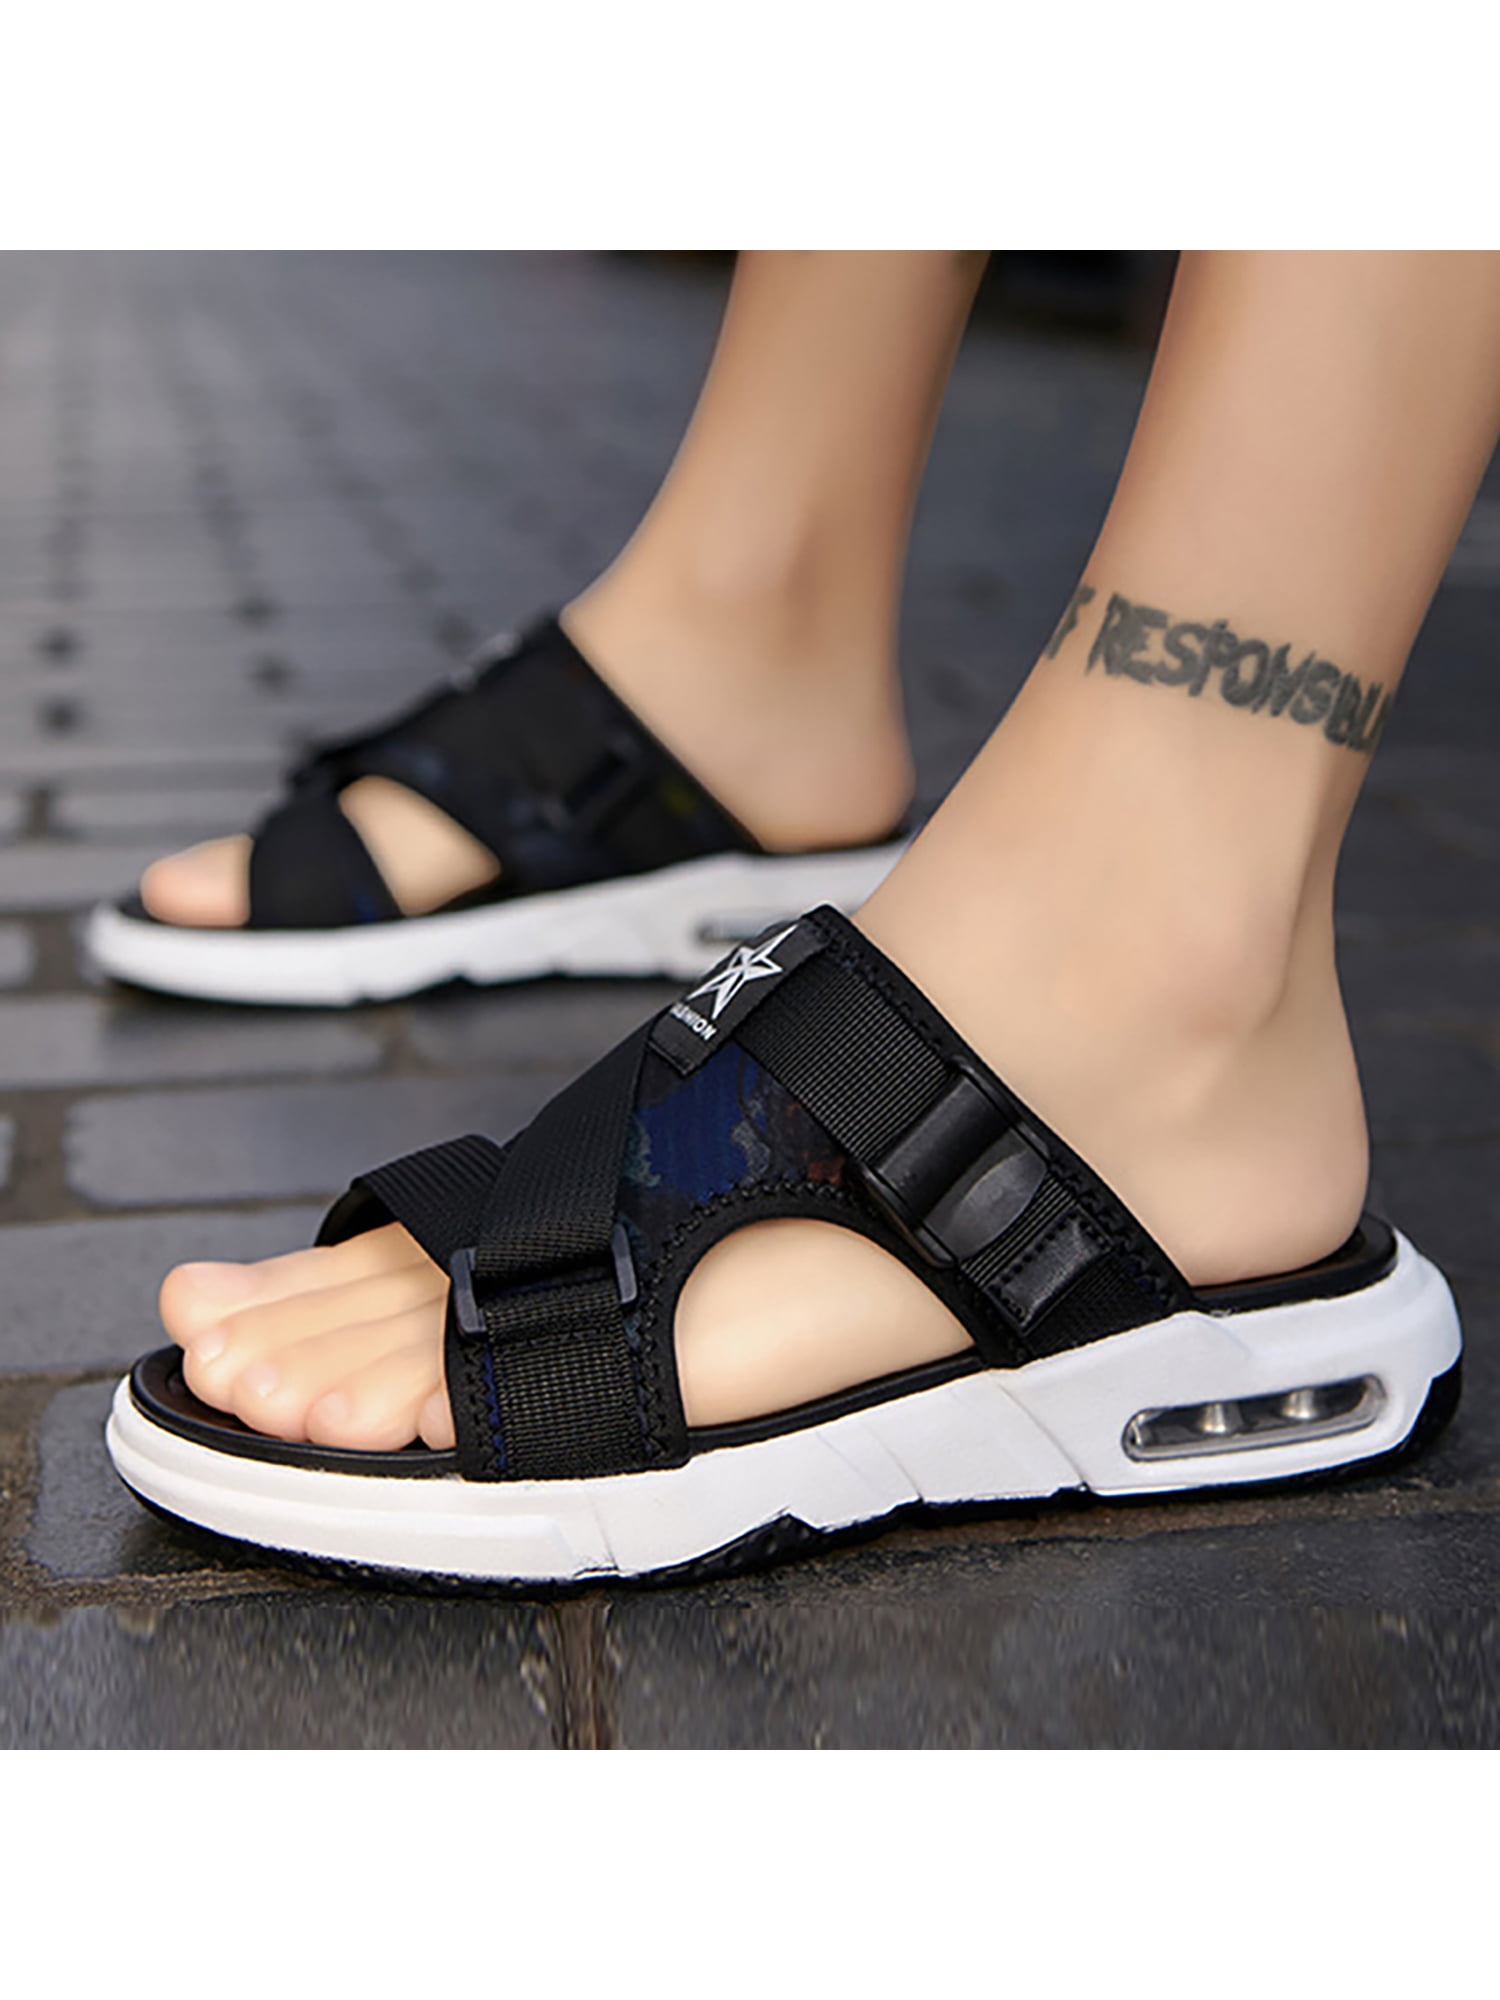 Men Casual Summer Shoes Sandals Non-Slip Slipper Indoor Or Outdoor Flip Flops 